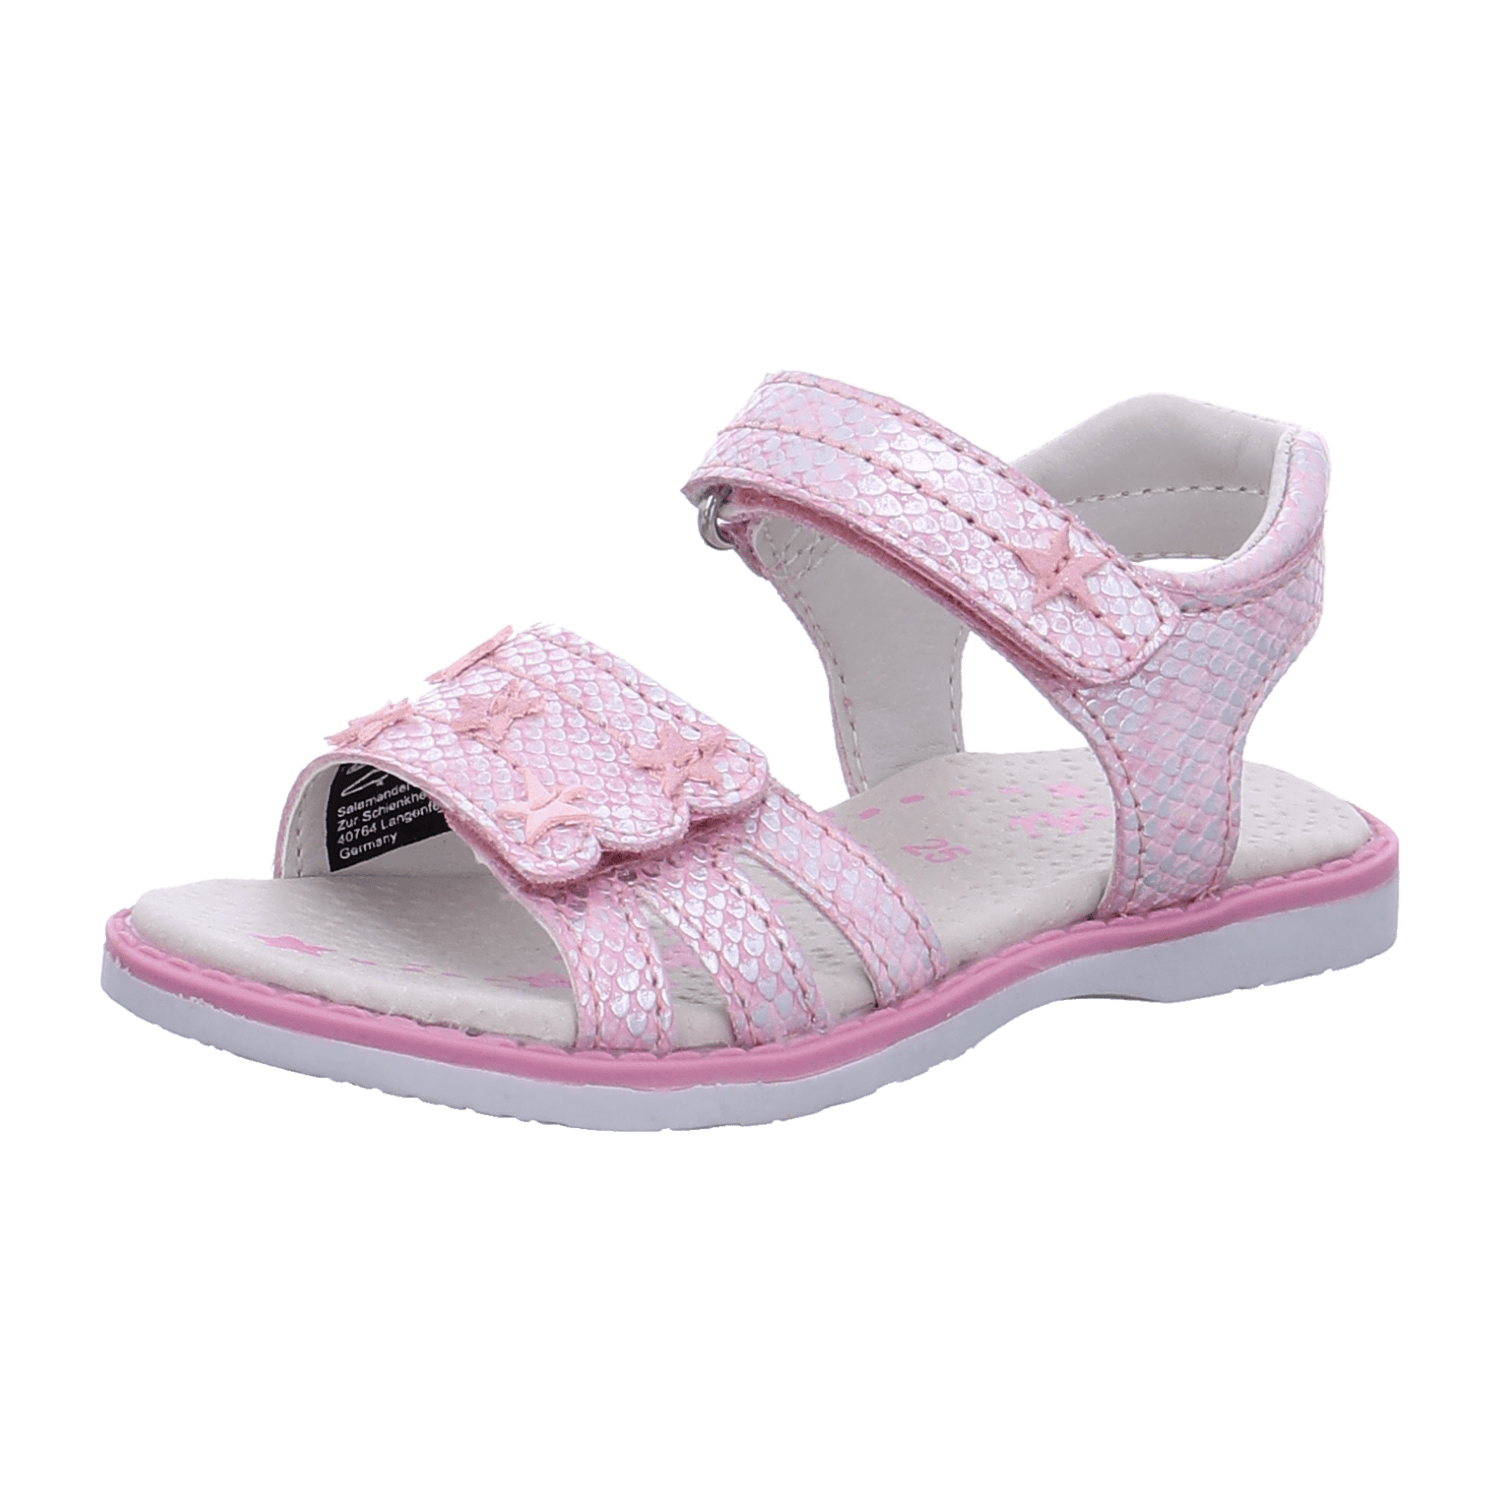 Lurchi Kinder Sandalen für Mädchen kaufen